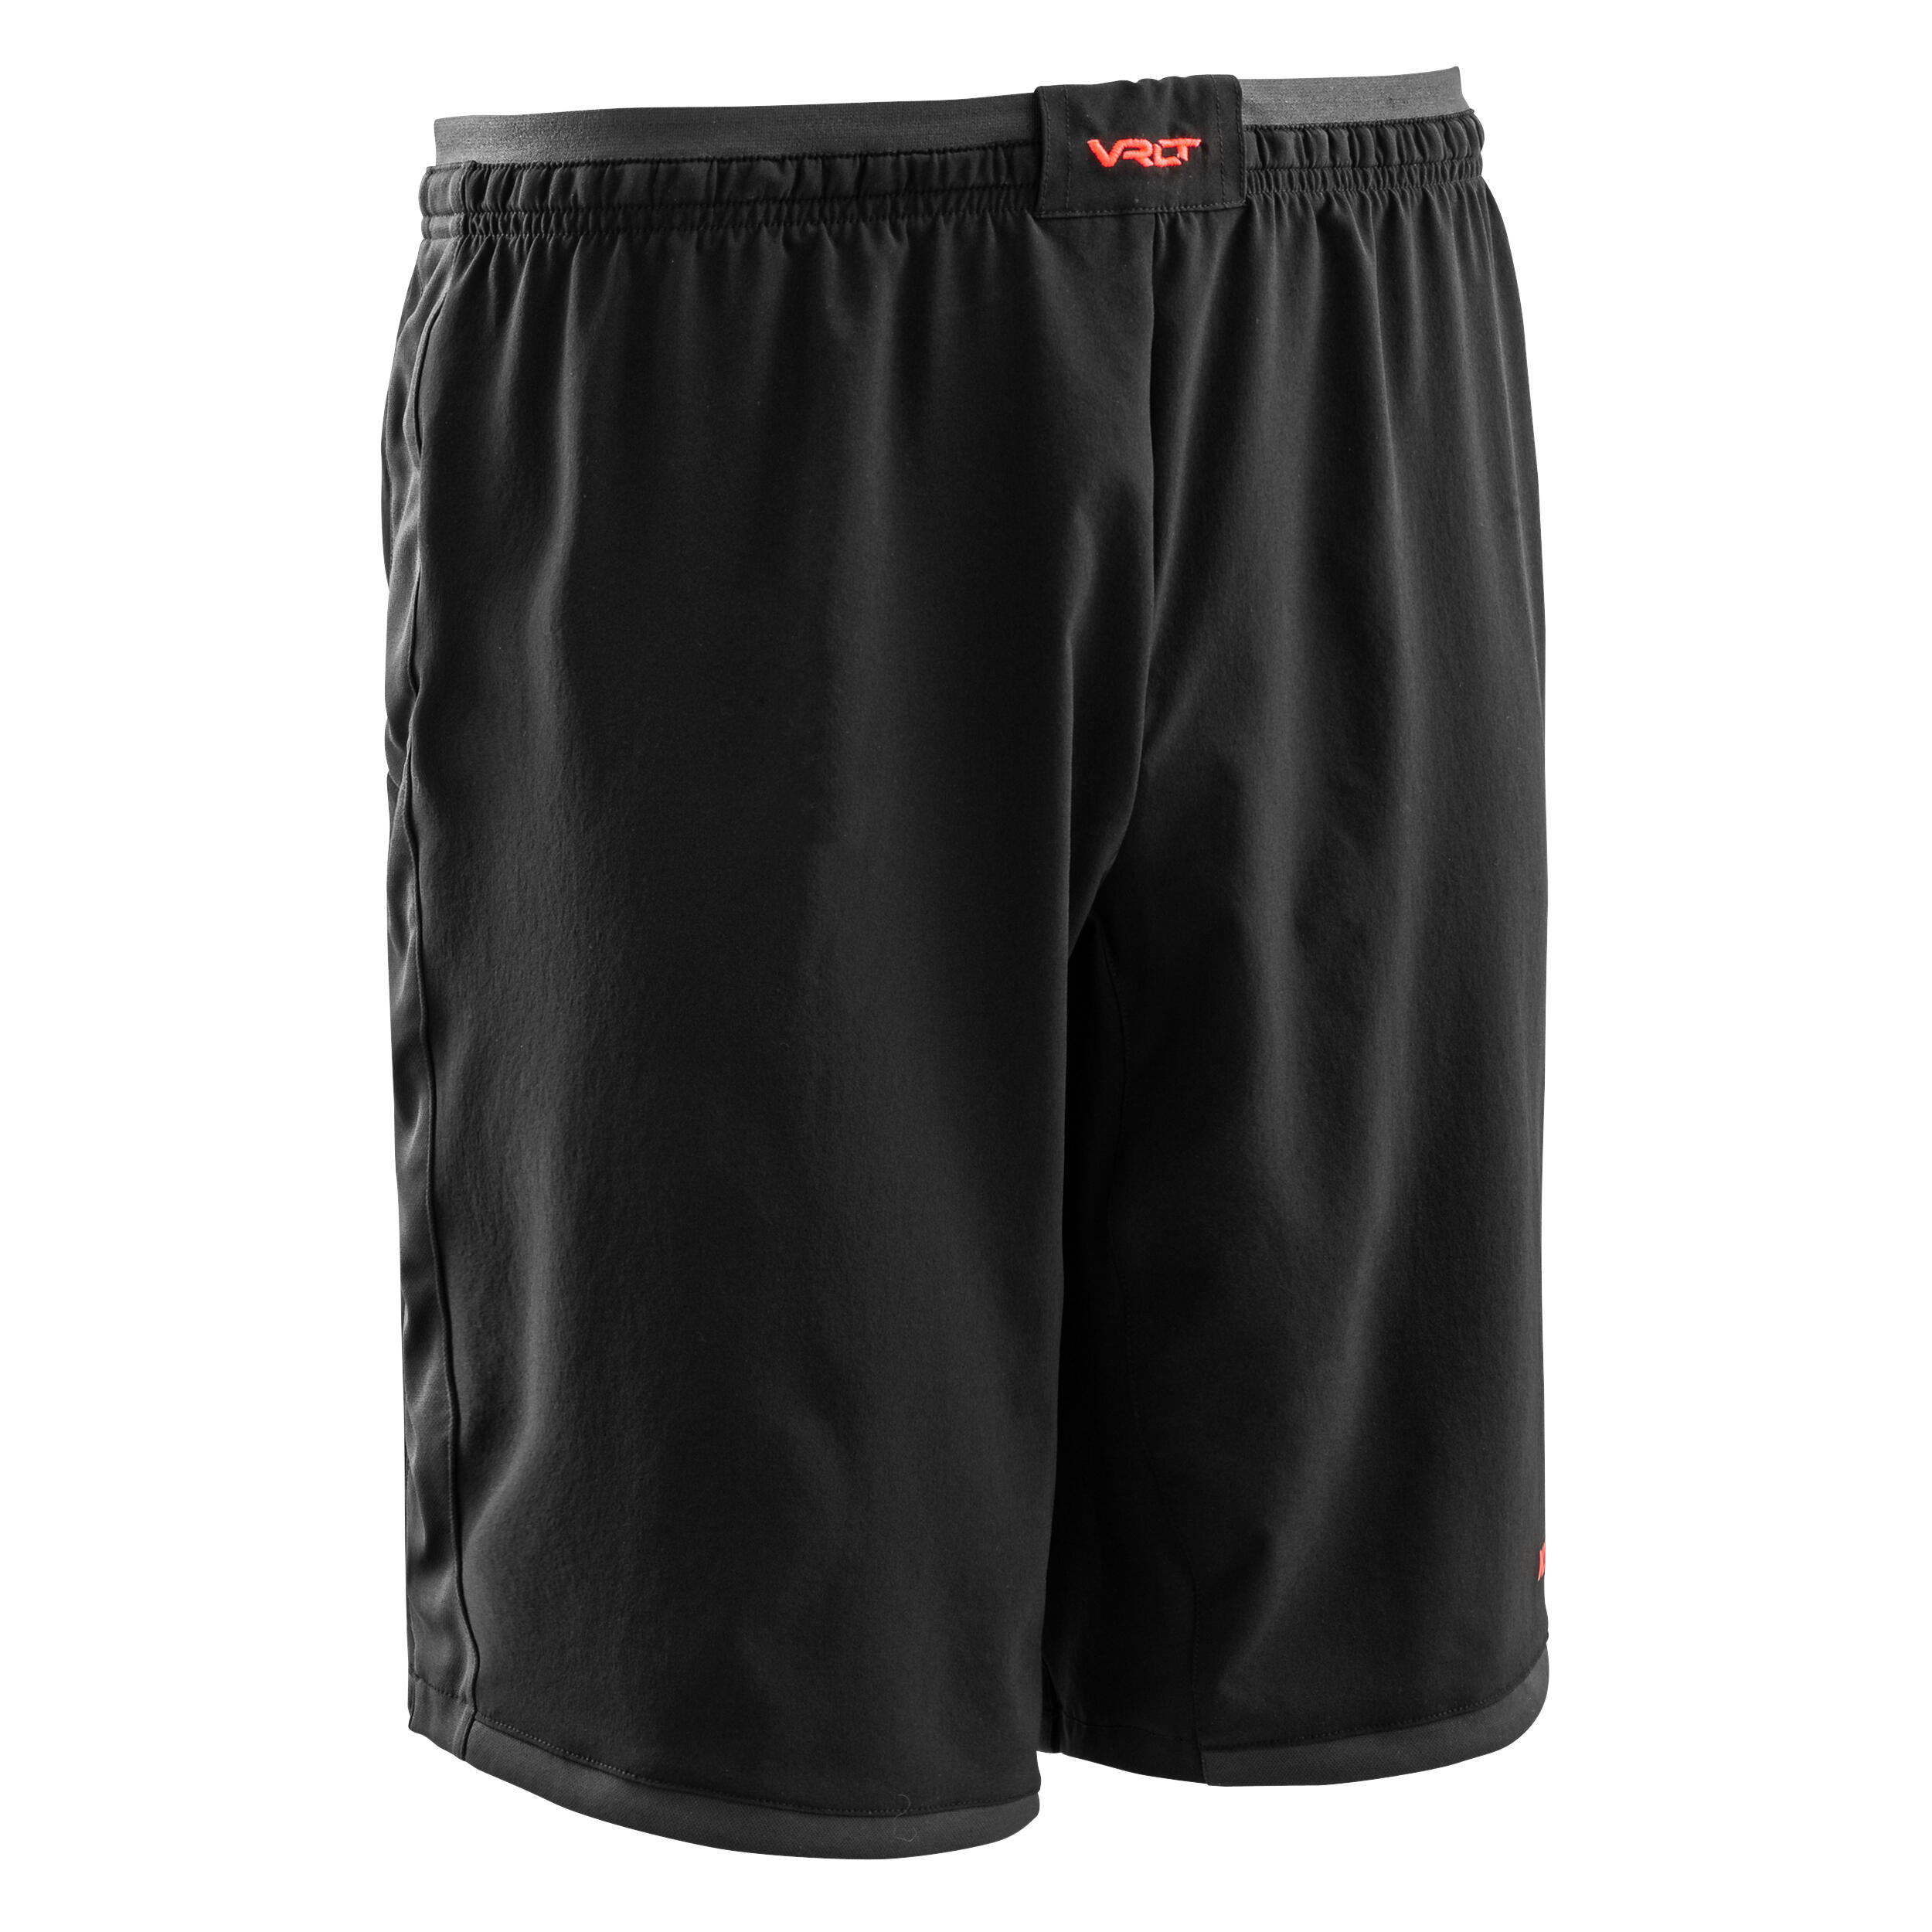 Decathlon | Pantaloncini calcio uomo VIRALTO II nero-grigio |  Kipsta